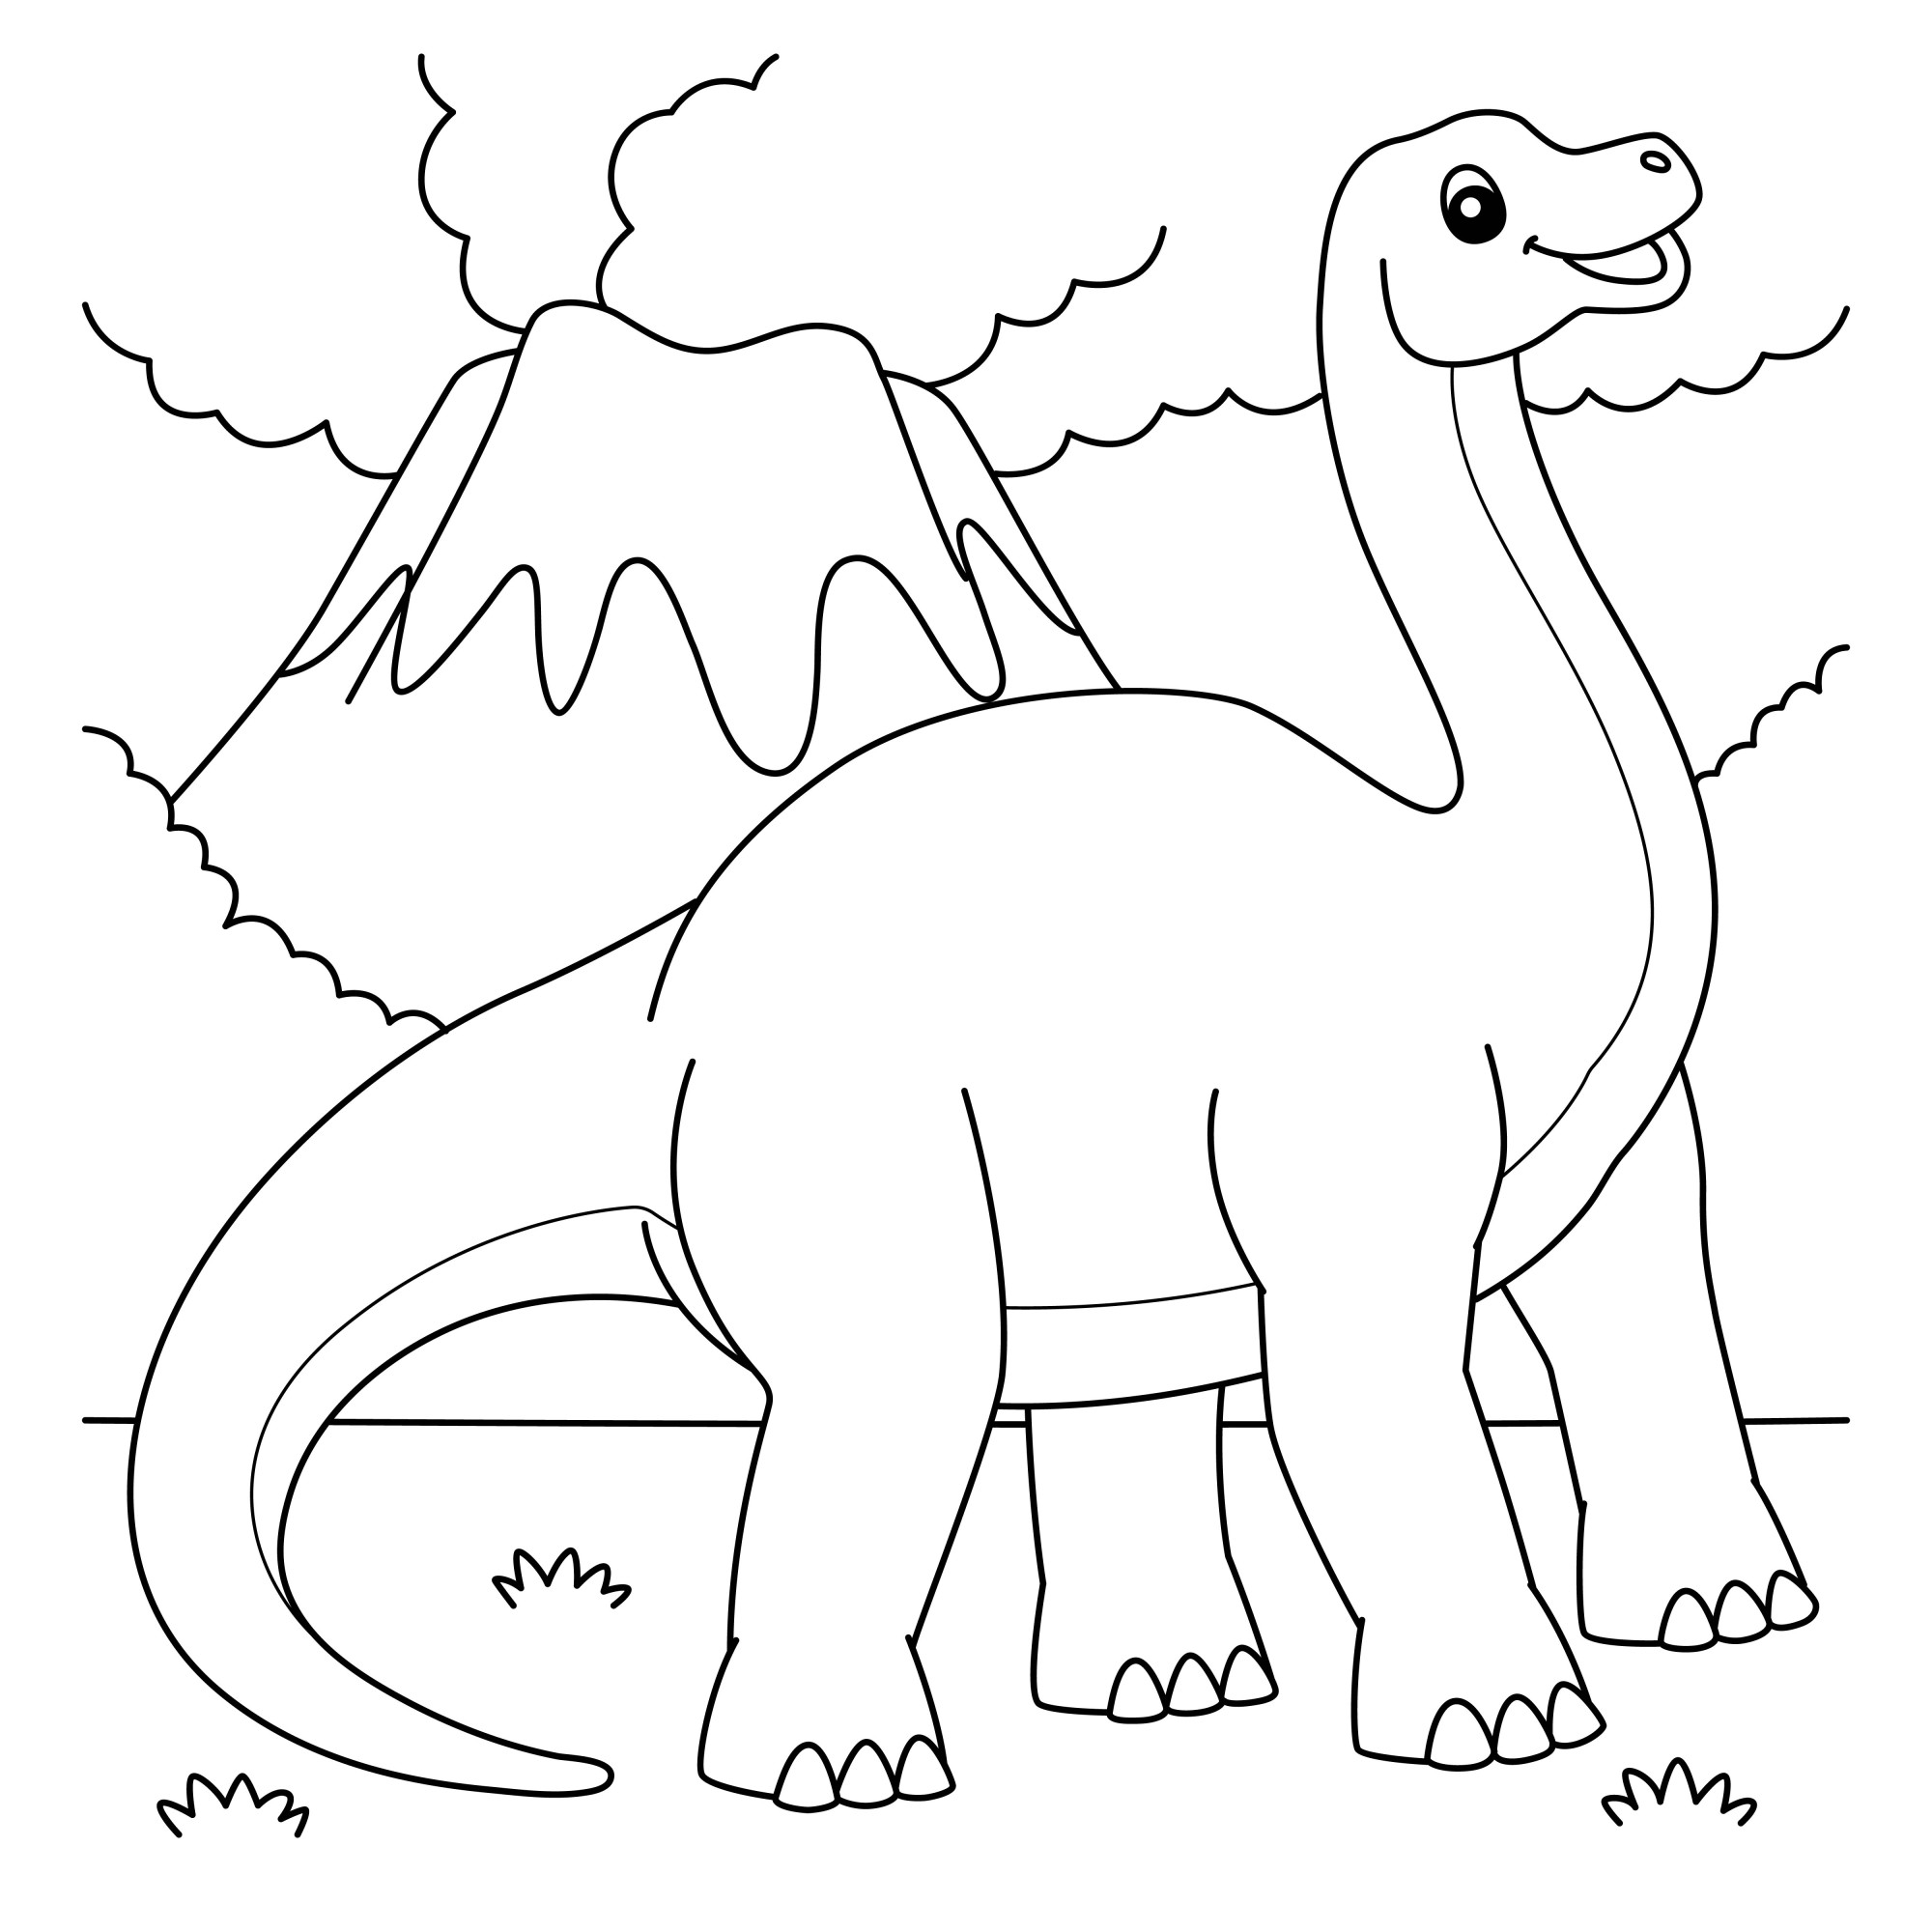 Раскраска для детей: бронтозавр на фоне гор и облаков